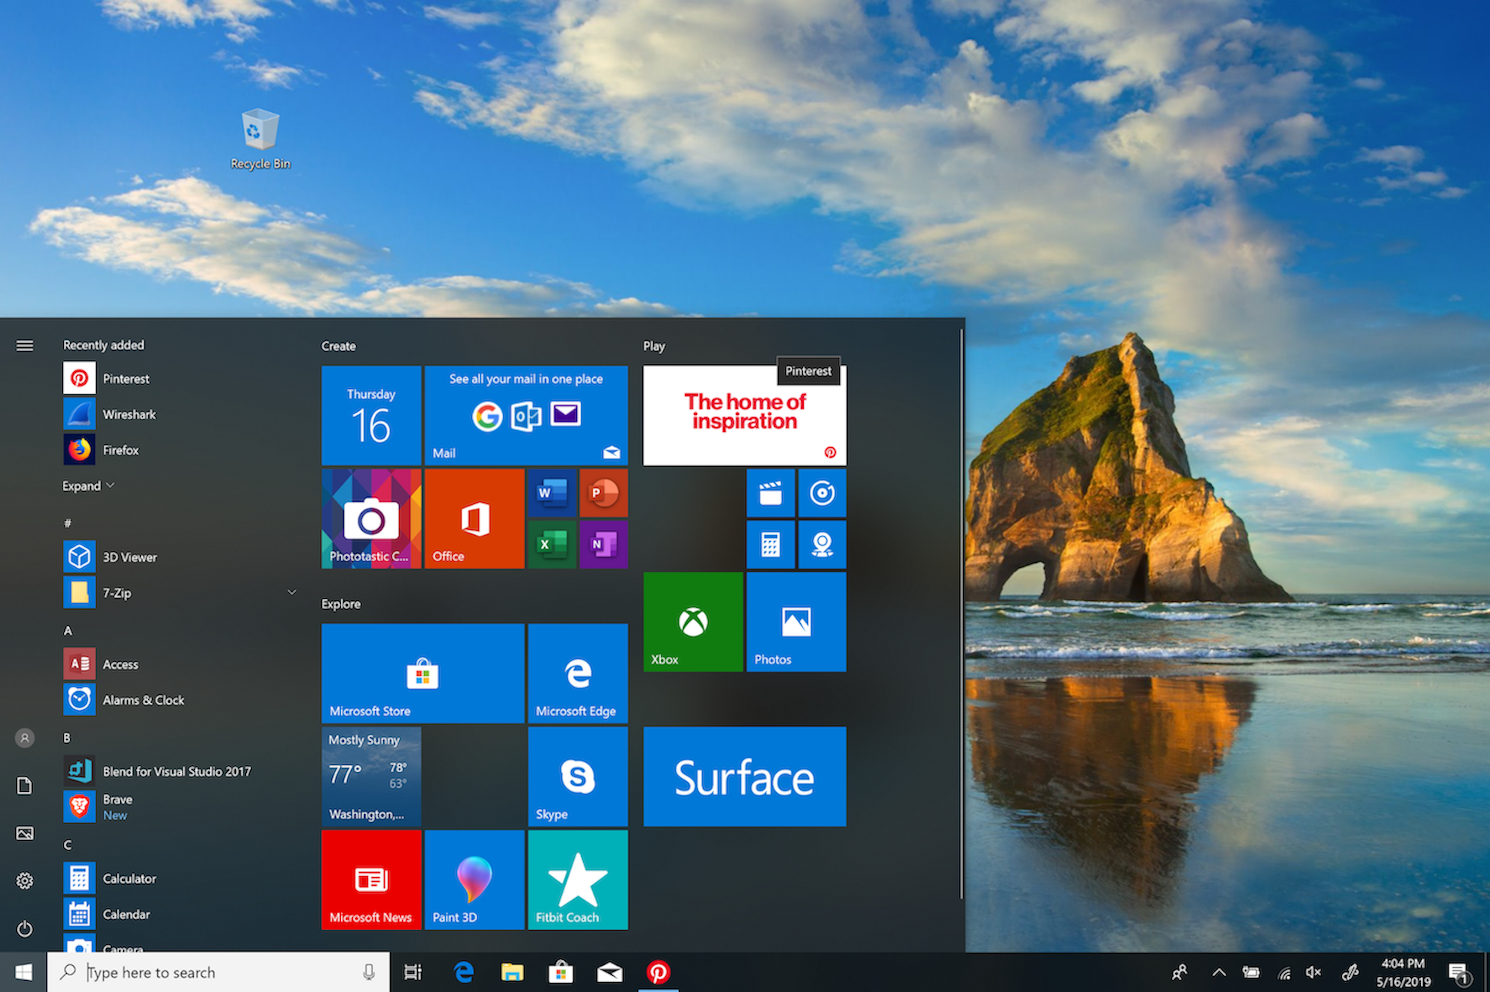  L’application Pinterest Windows disponible dans le Microsoft Store